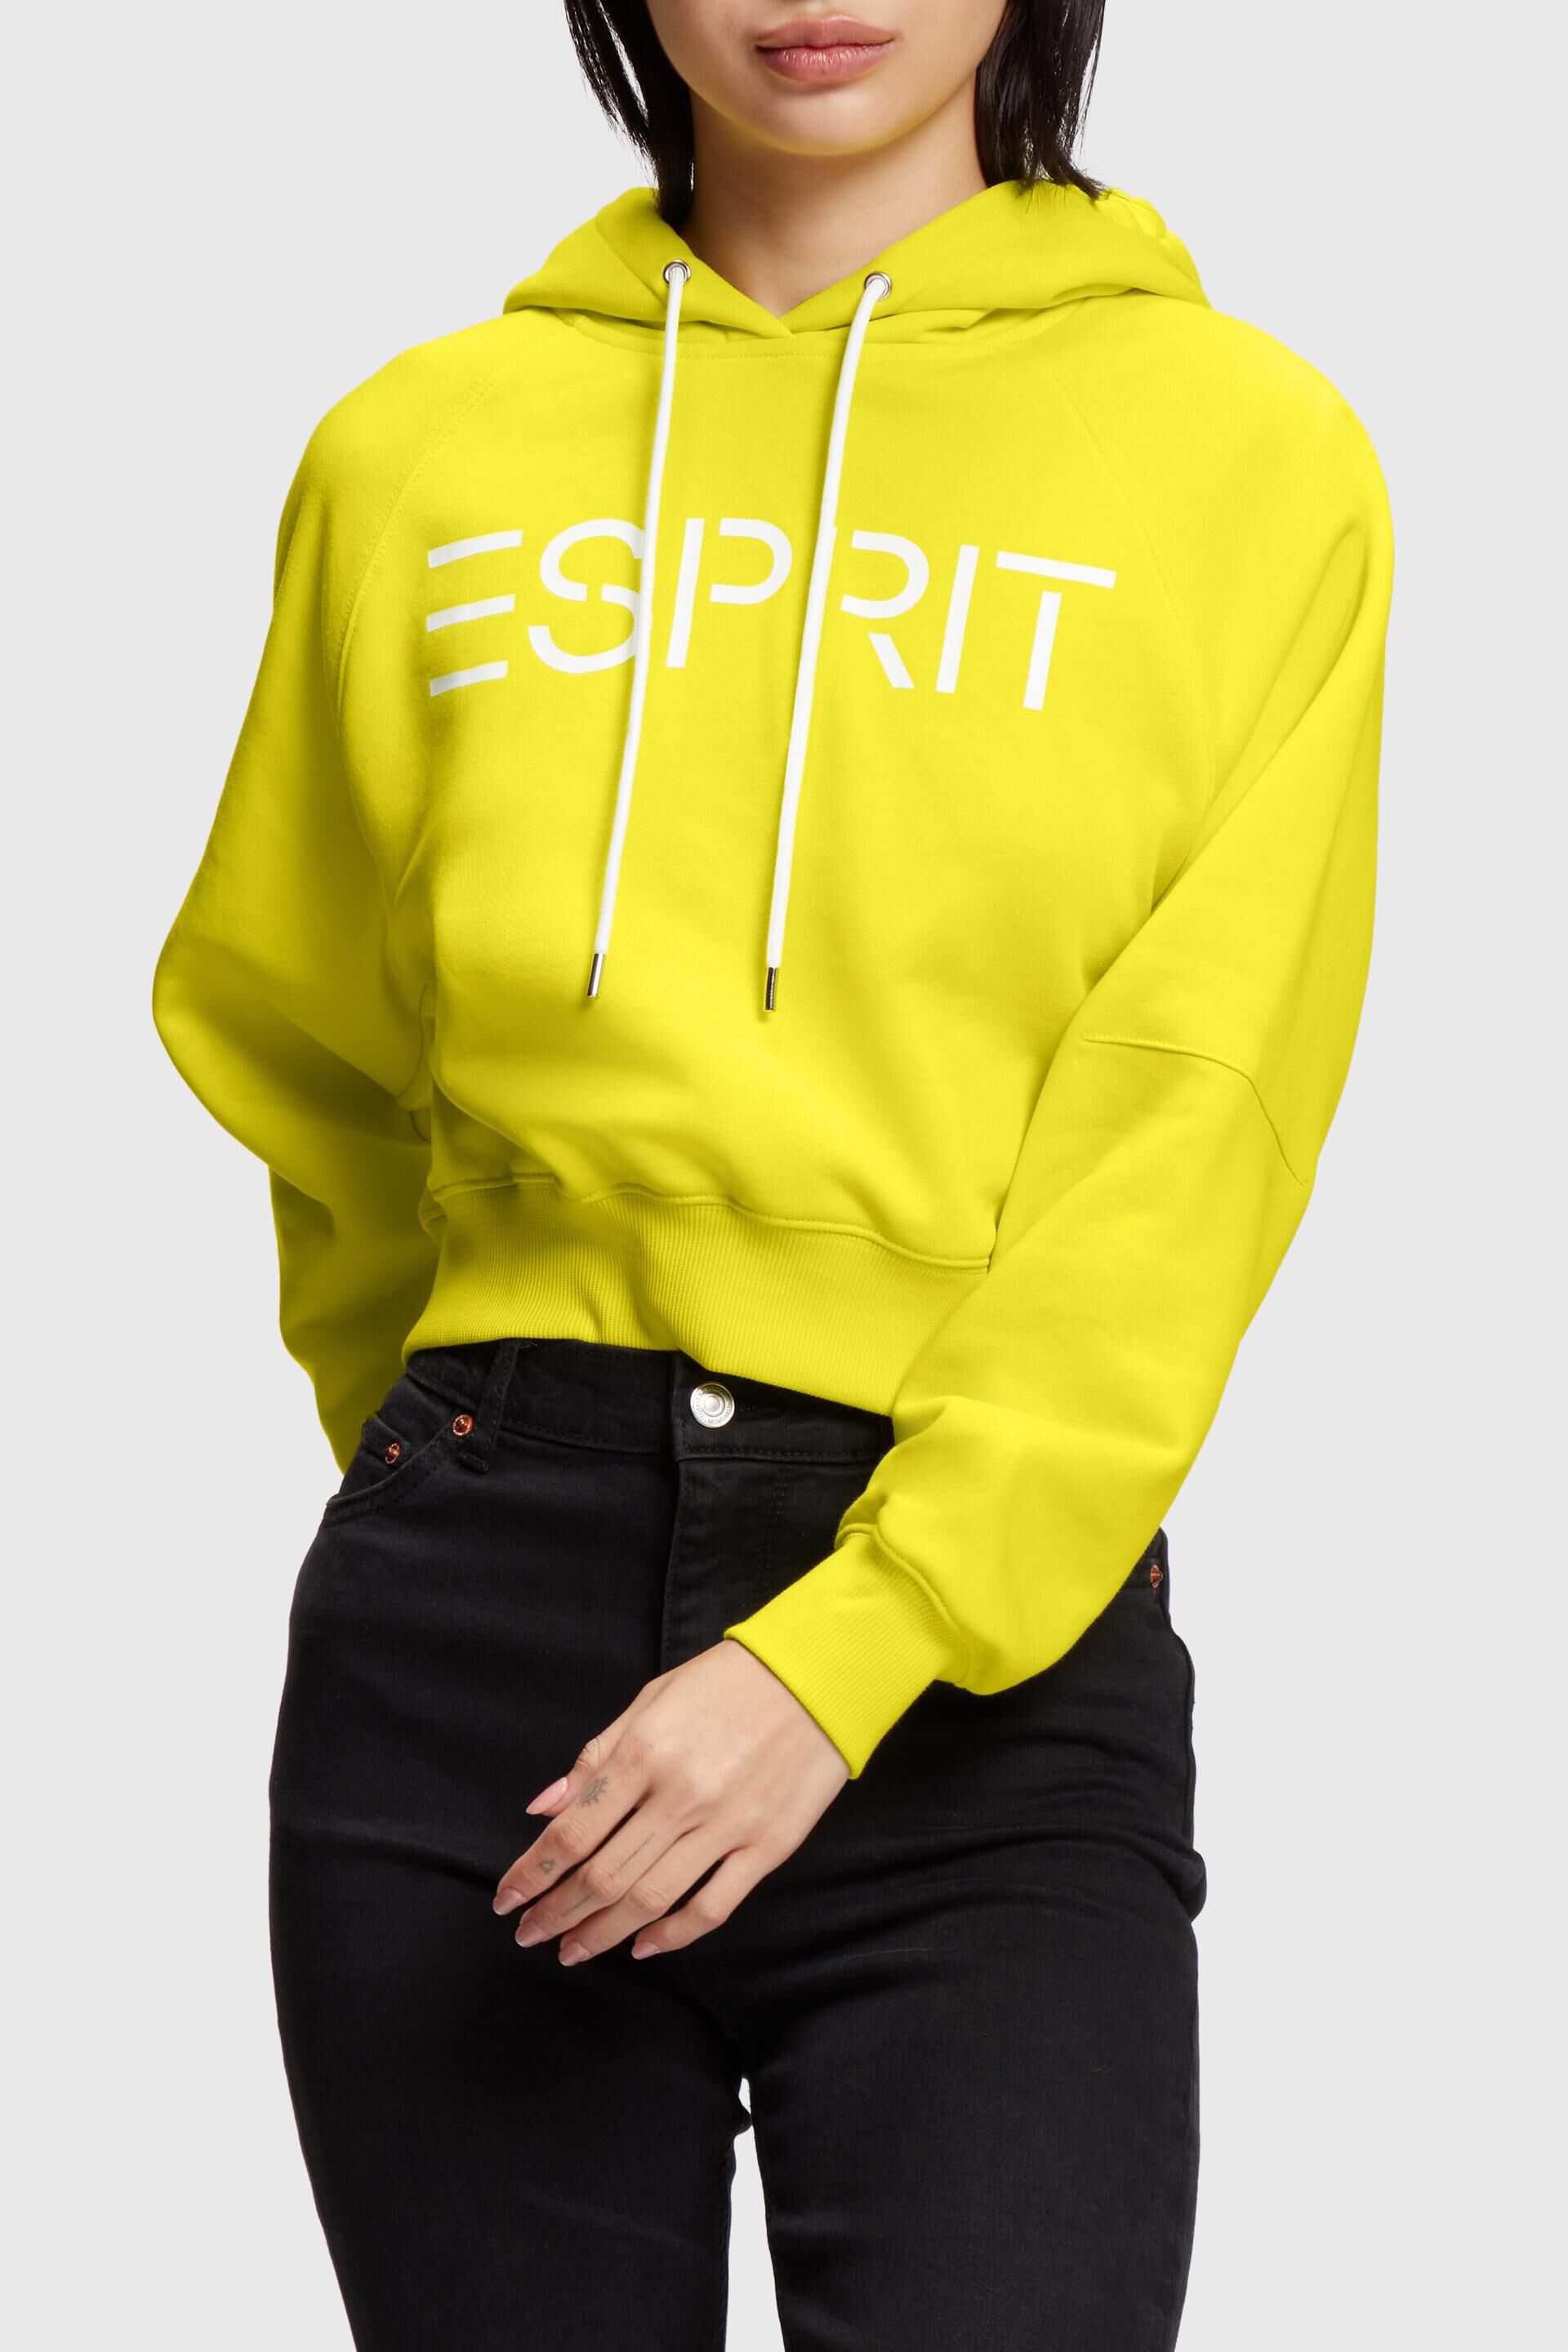 Esprit hoodie Cropped logo